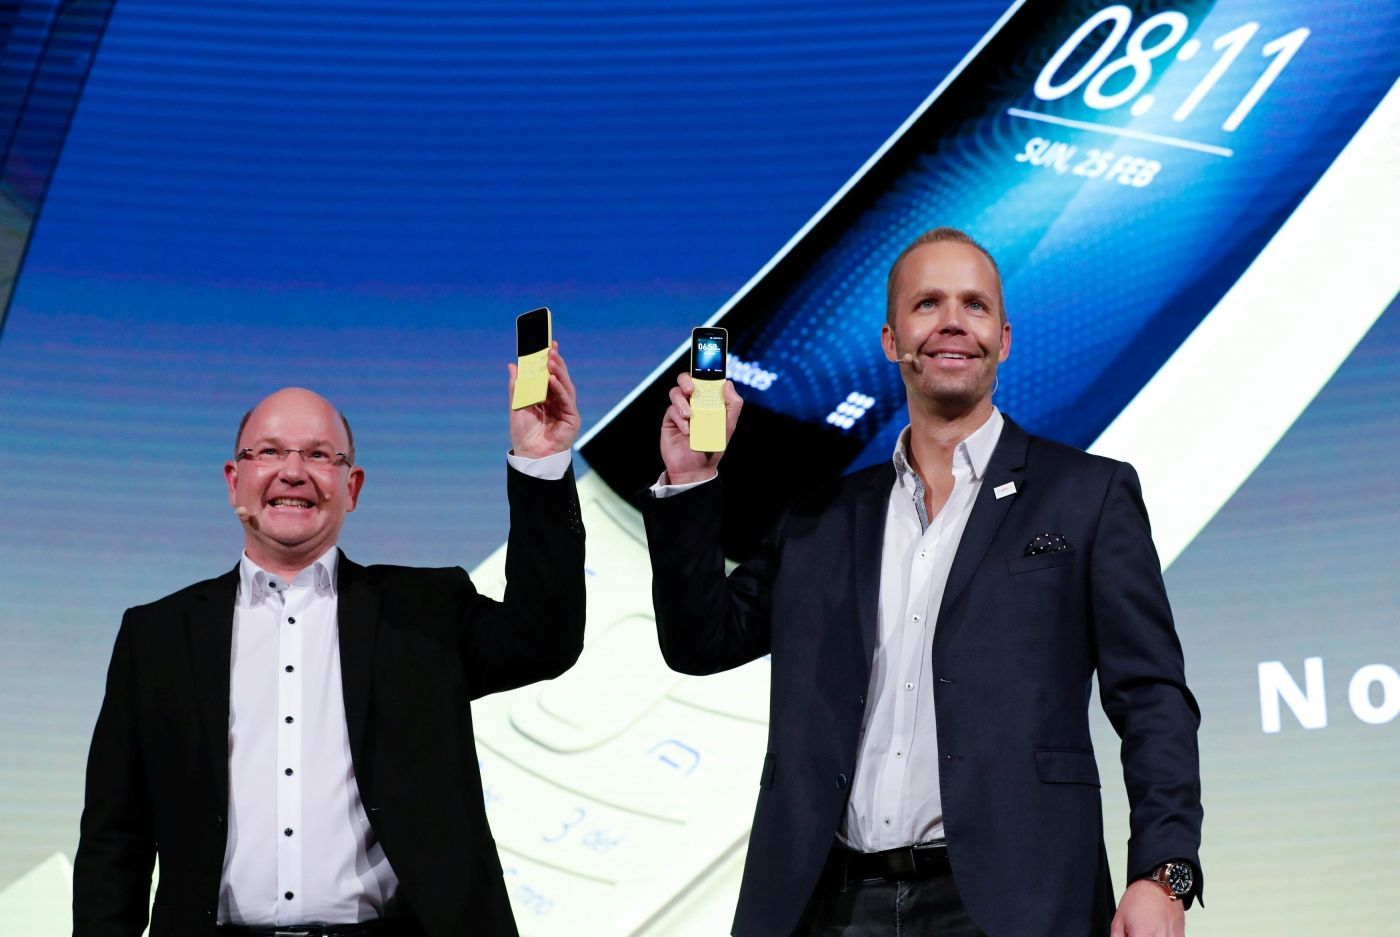 Florian Seiche a Juho Sarvikas představují telefon Nokia 8110